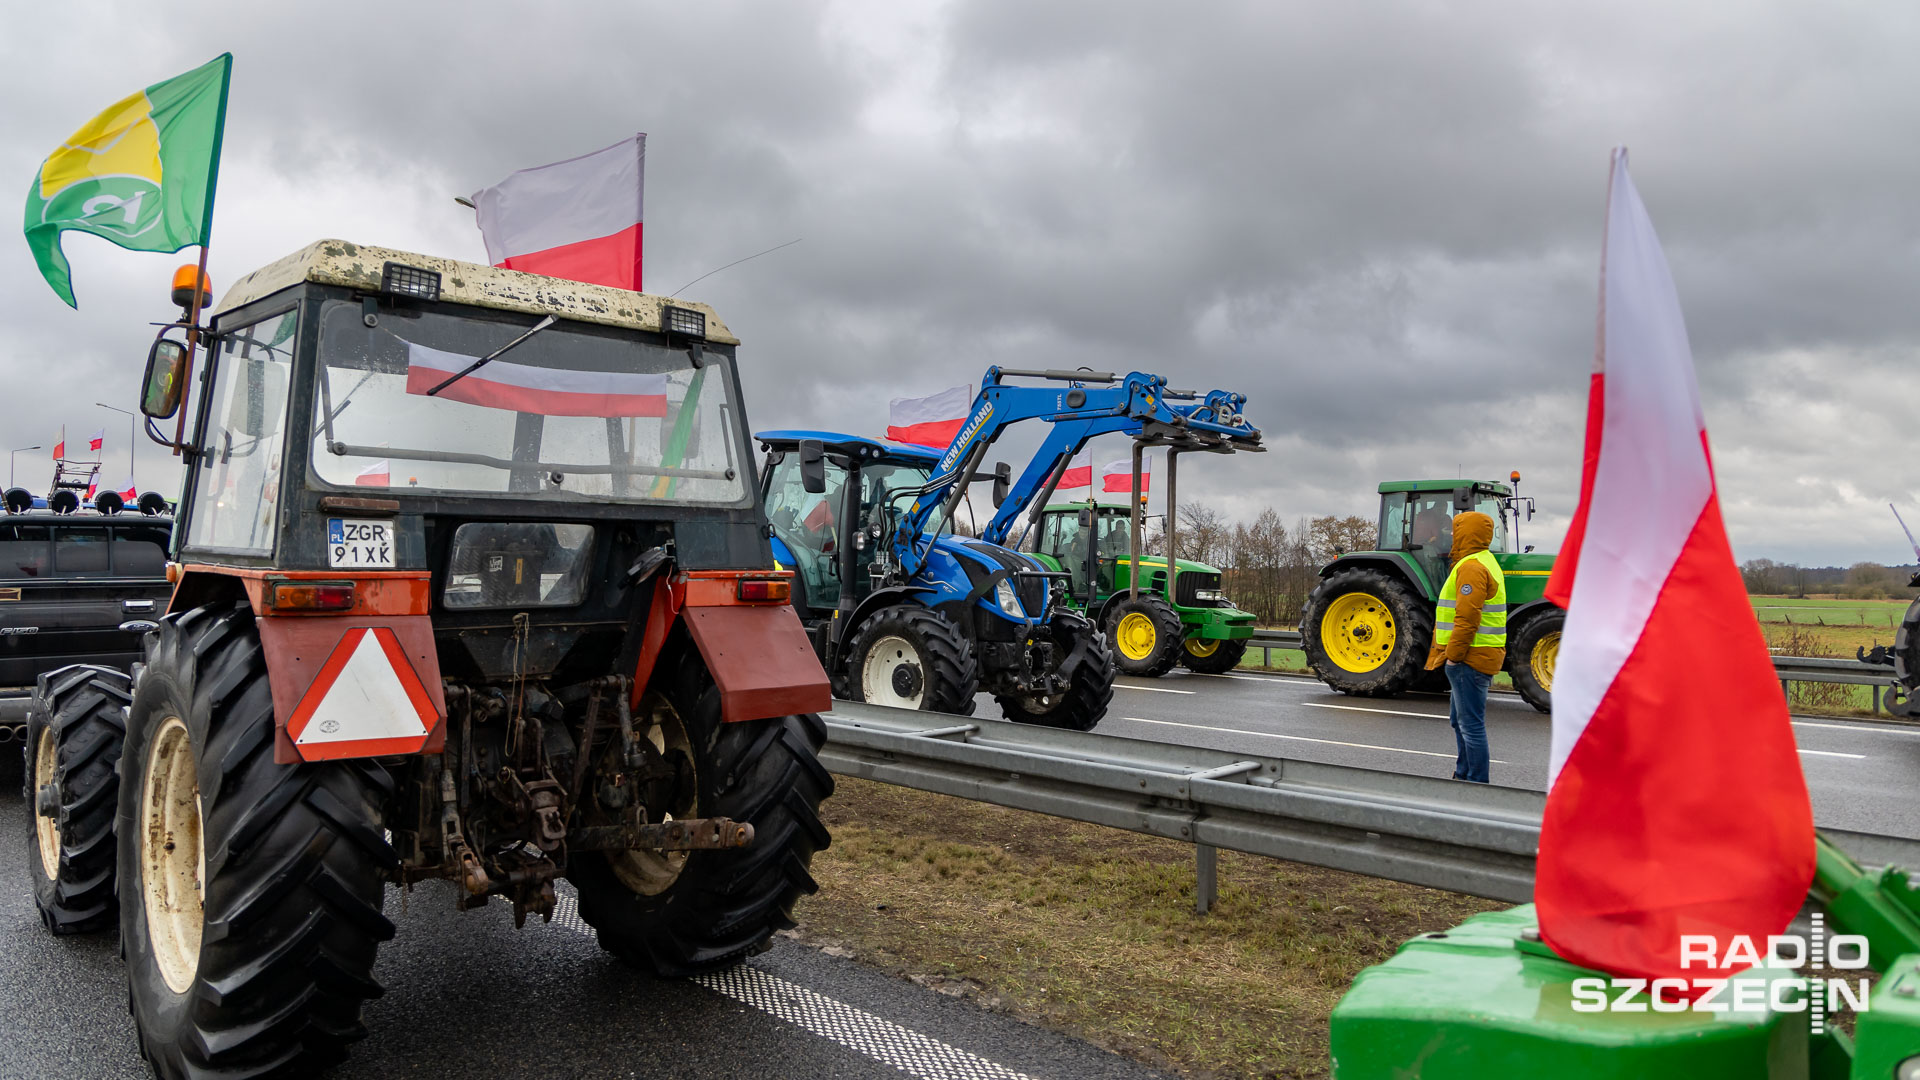 Dziś rolnicy znów pojawią się na drogach w regionie. Trwają również protesty w Sejmie, gdzie rolnicy domagają się rozmowy z premierem Donaldem Tuskiem.